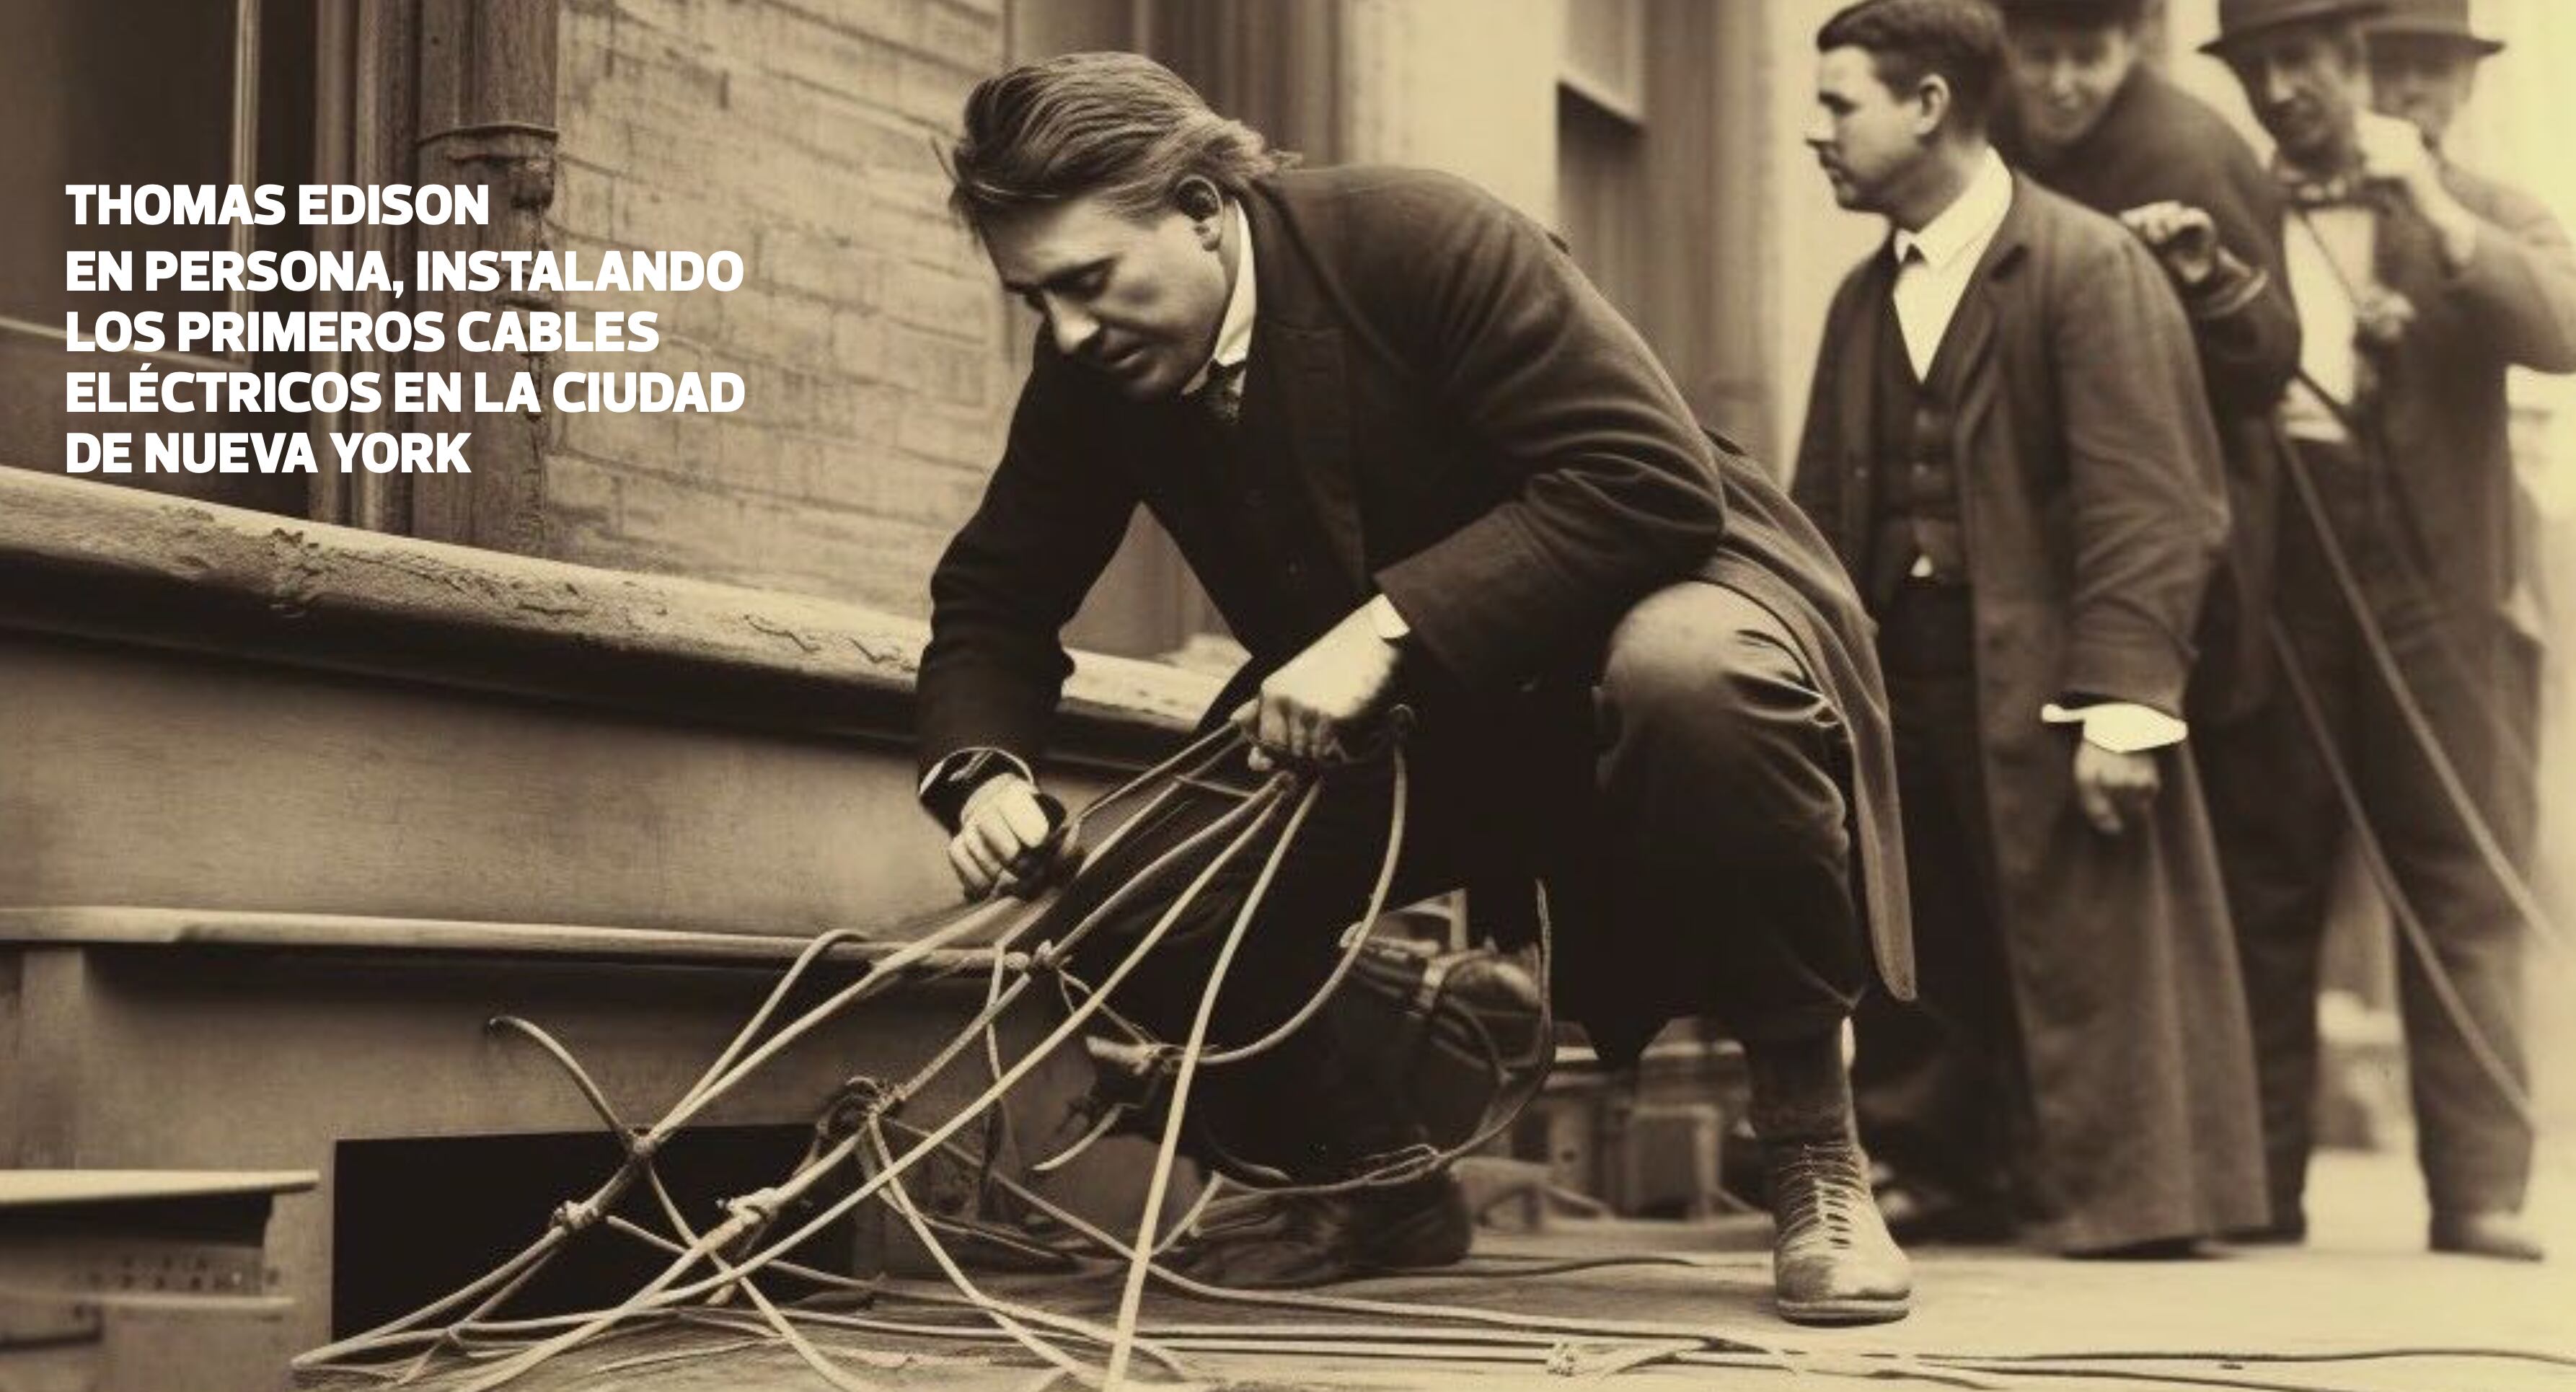 Thomas Edison en una imagen, creada por IA como todas las de la presentación de Hadad, instalando cables de electricidad en Nueva York.